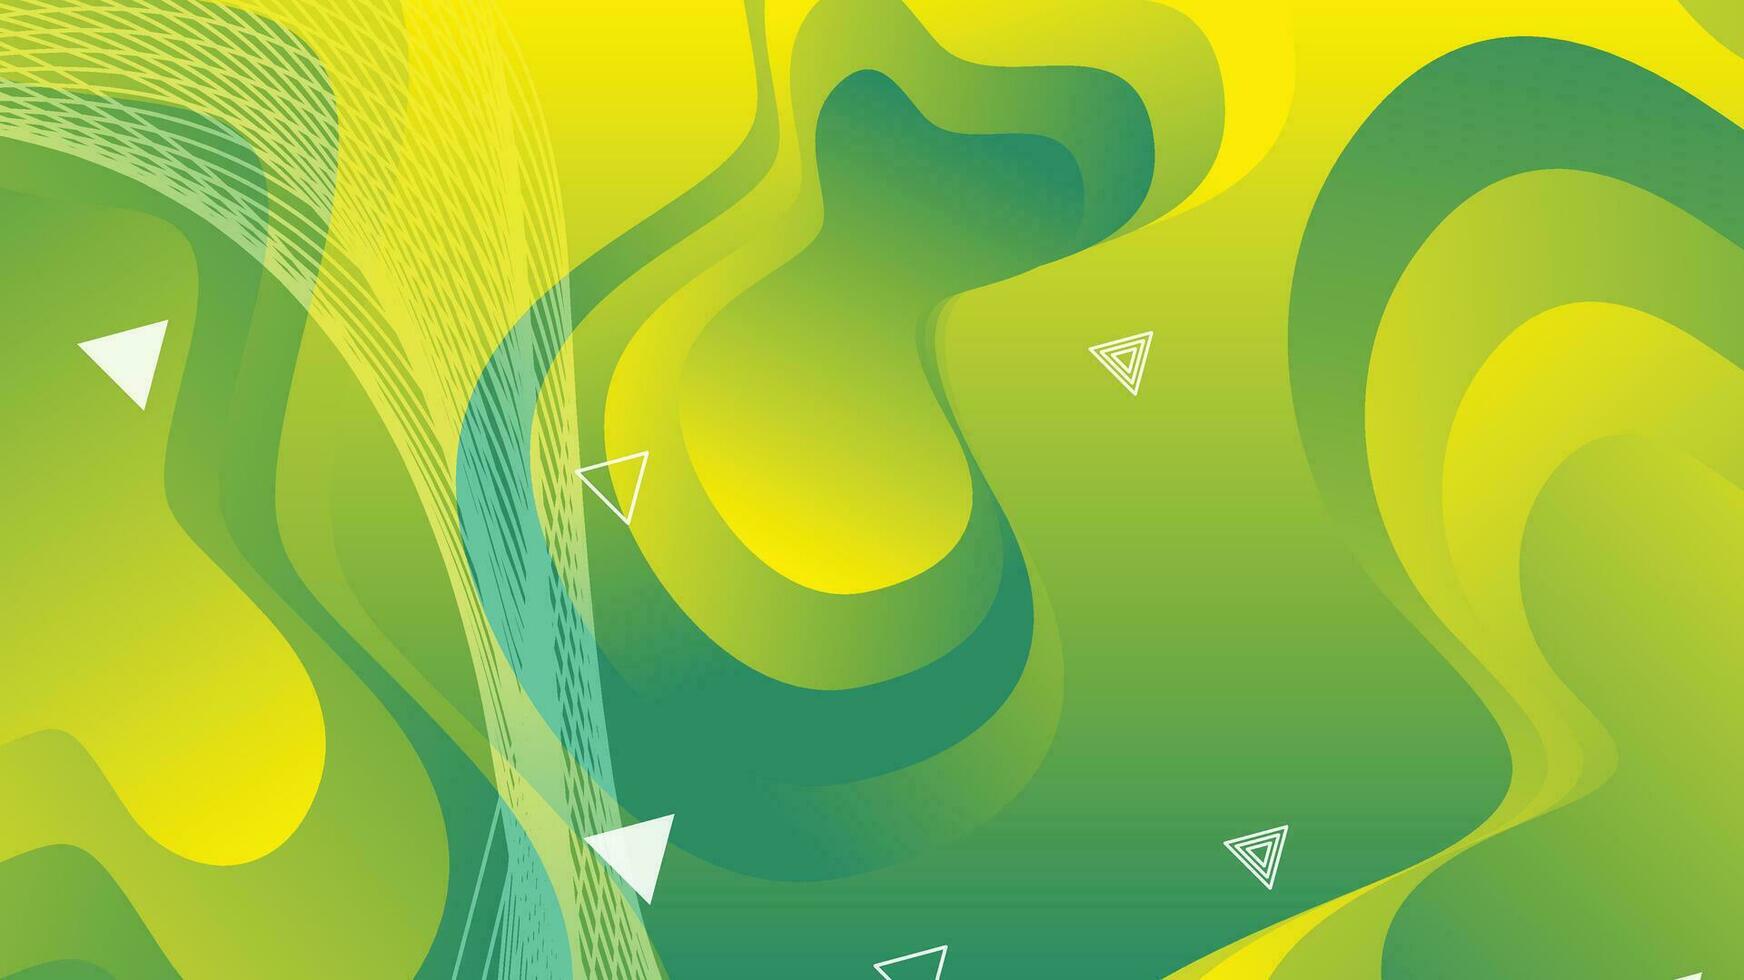 grön och gul lutning vätska Vinka abstrakt bakgrund vektor